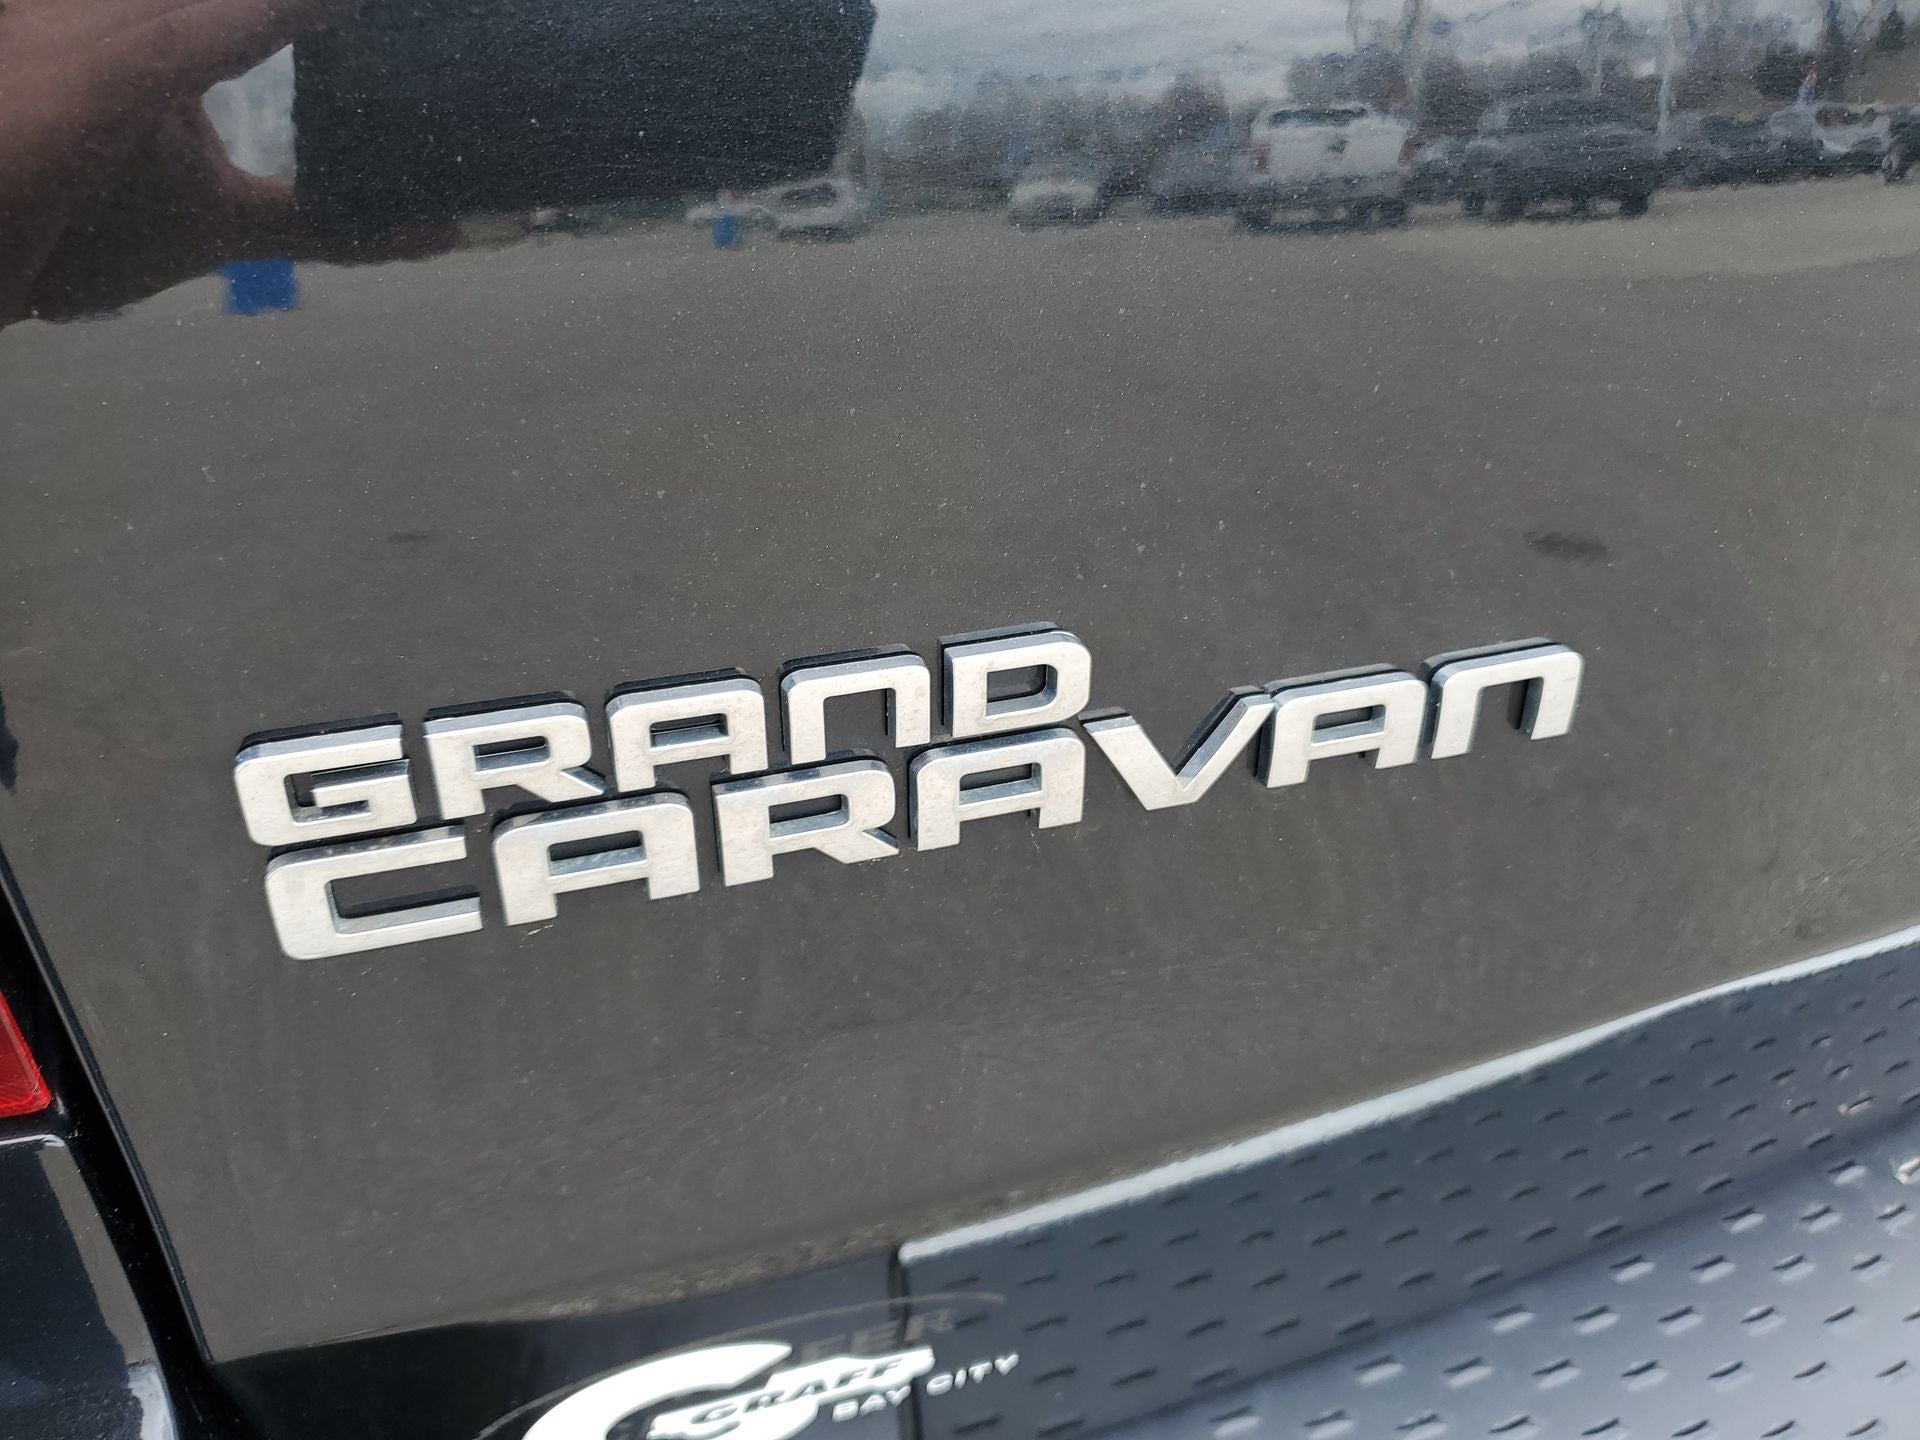 2014 Dodge Grand Caravan SE/SXT